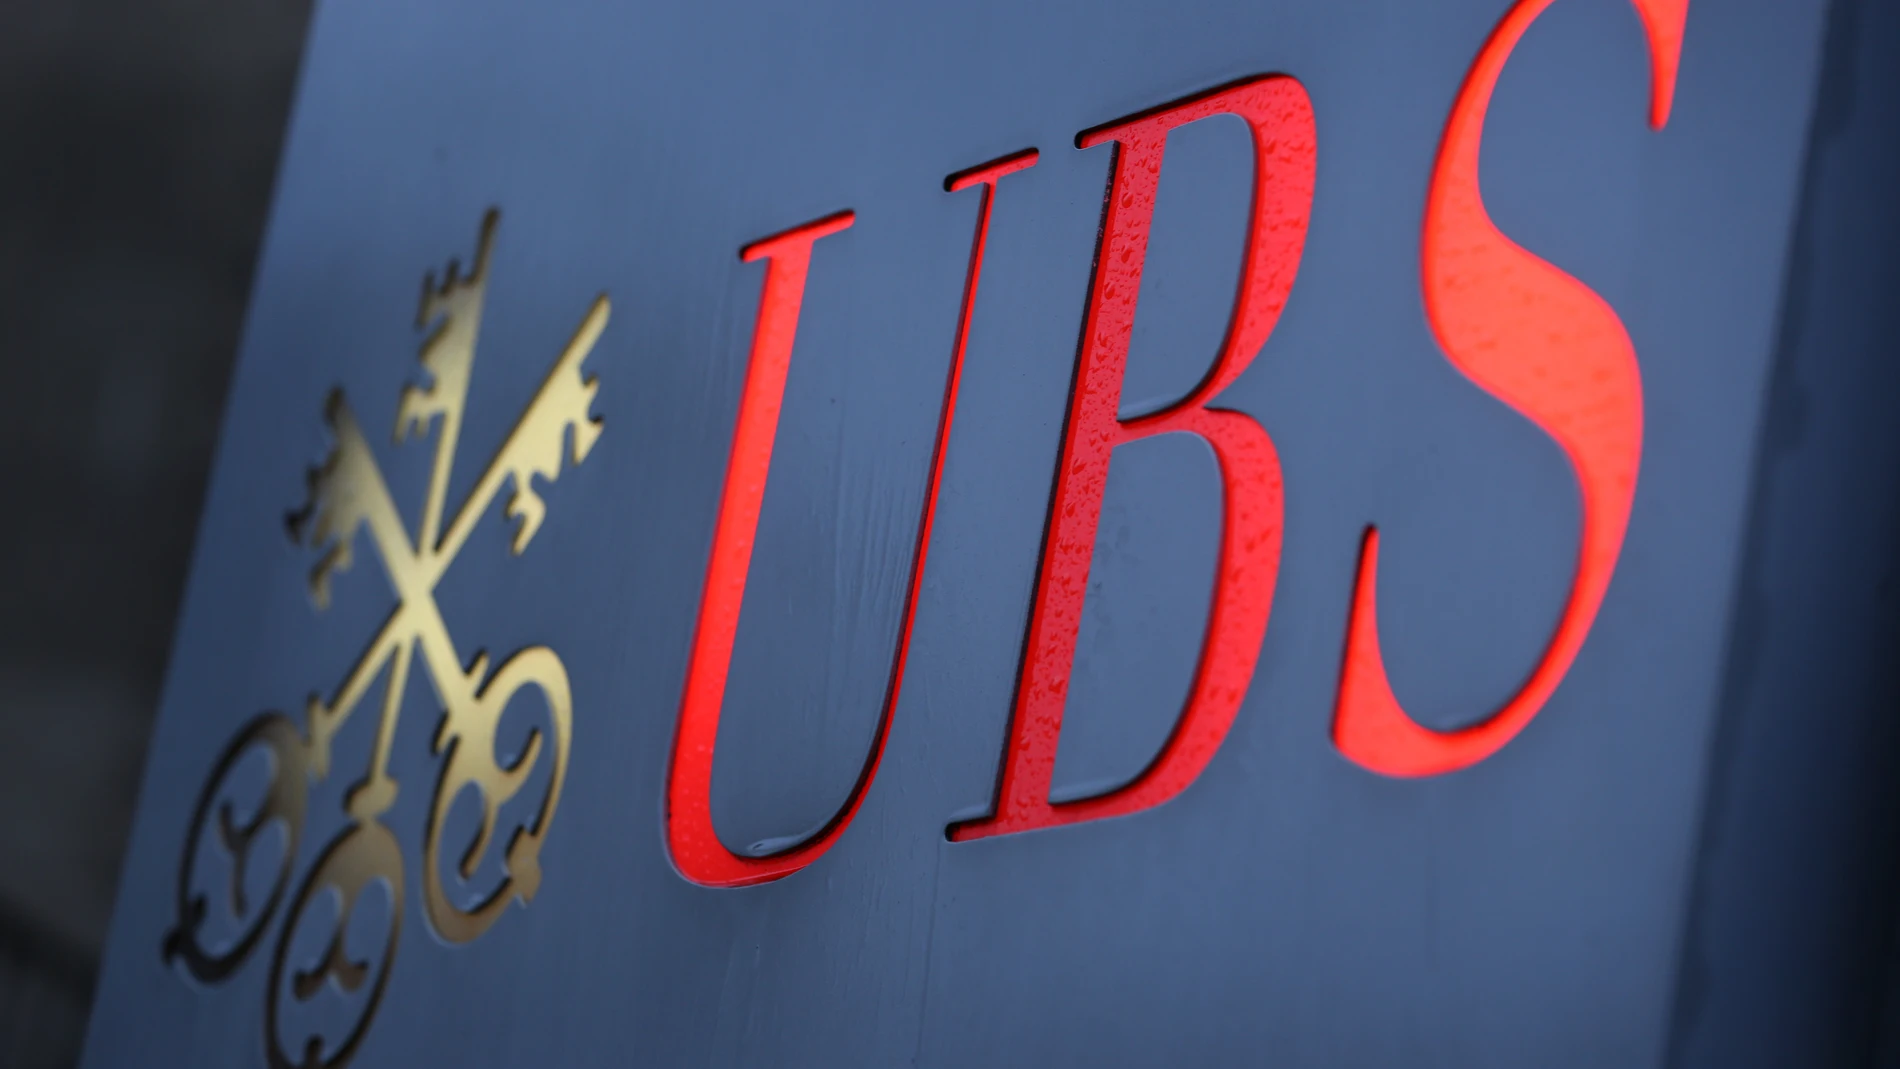 Economía/Finanzas.- UBS estudia recortar miles de empleos tras comprar Credit Suisse, según prensa